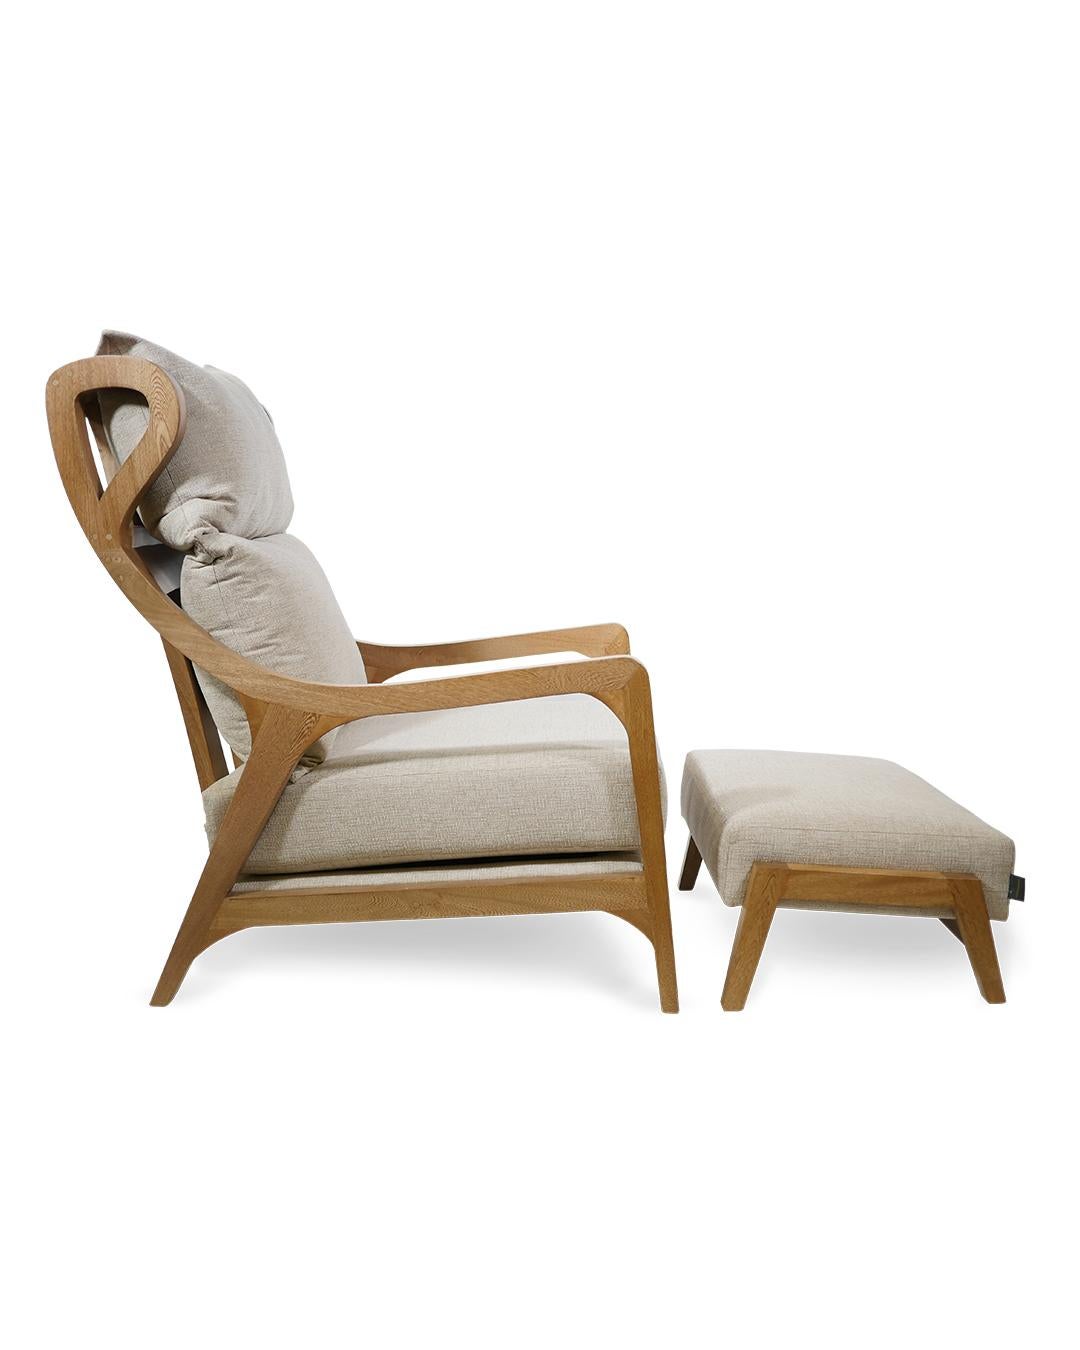 Un fauteuil moderne idéal pour se détendre, lire ou faire une sieste. 
Le travail du bois est magnifique et il sera du plus bel effet dans votre salon ou votre chambre à coucher. Veuillez noter que ce fauteuil est très haut, il a été conçu pour